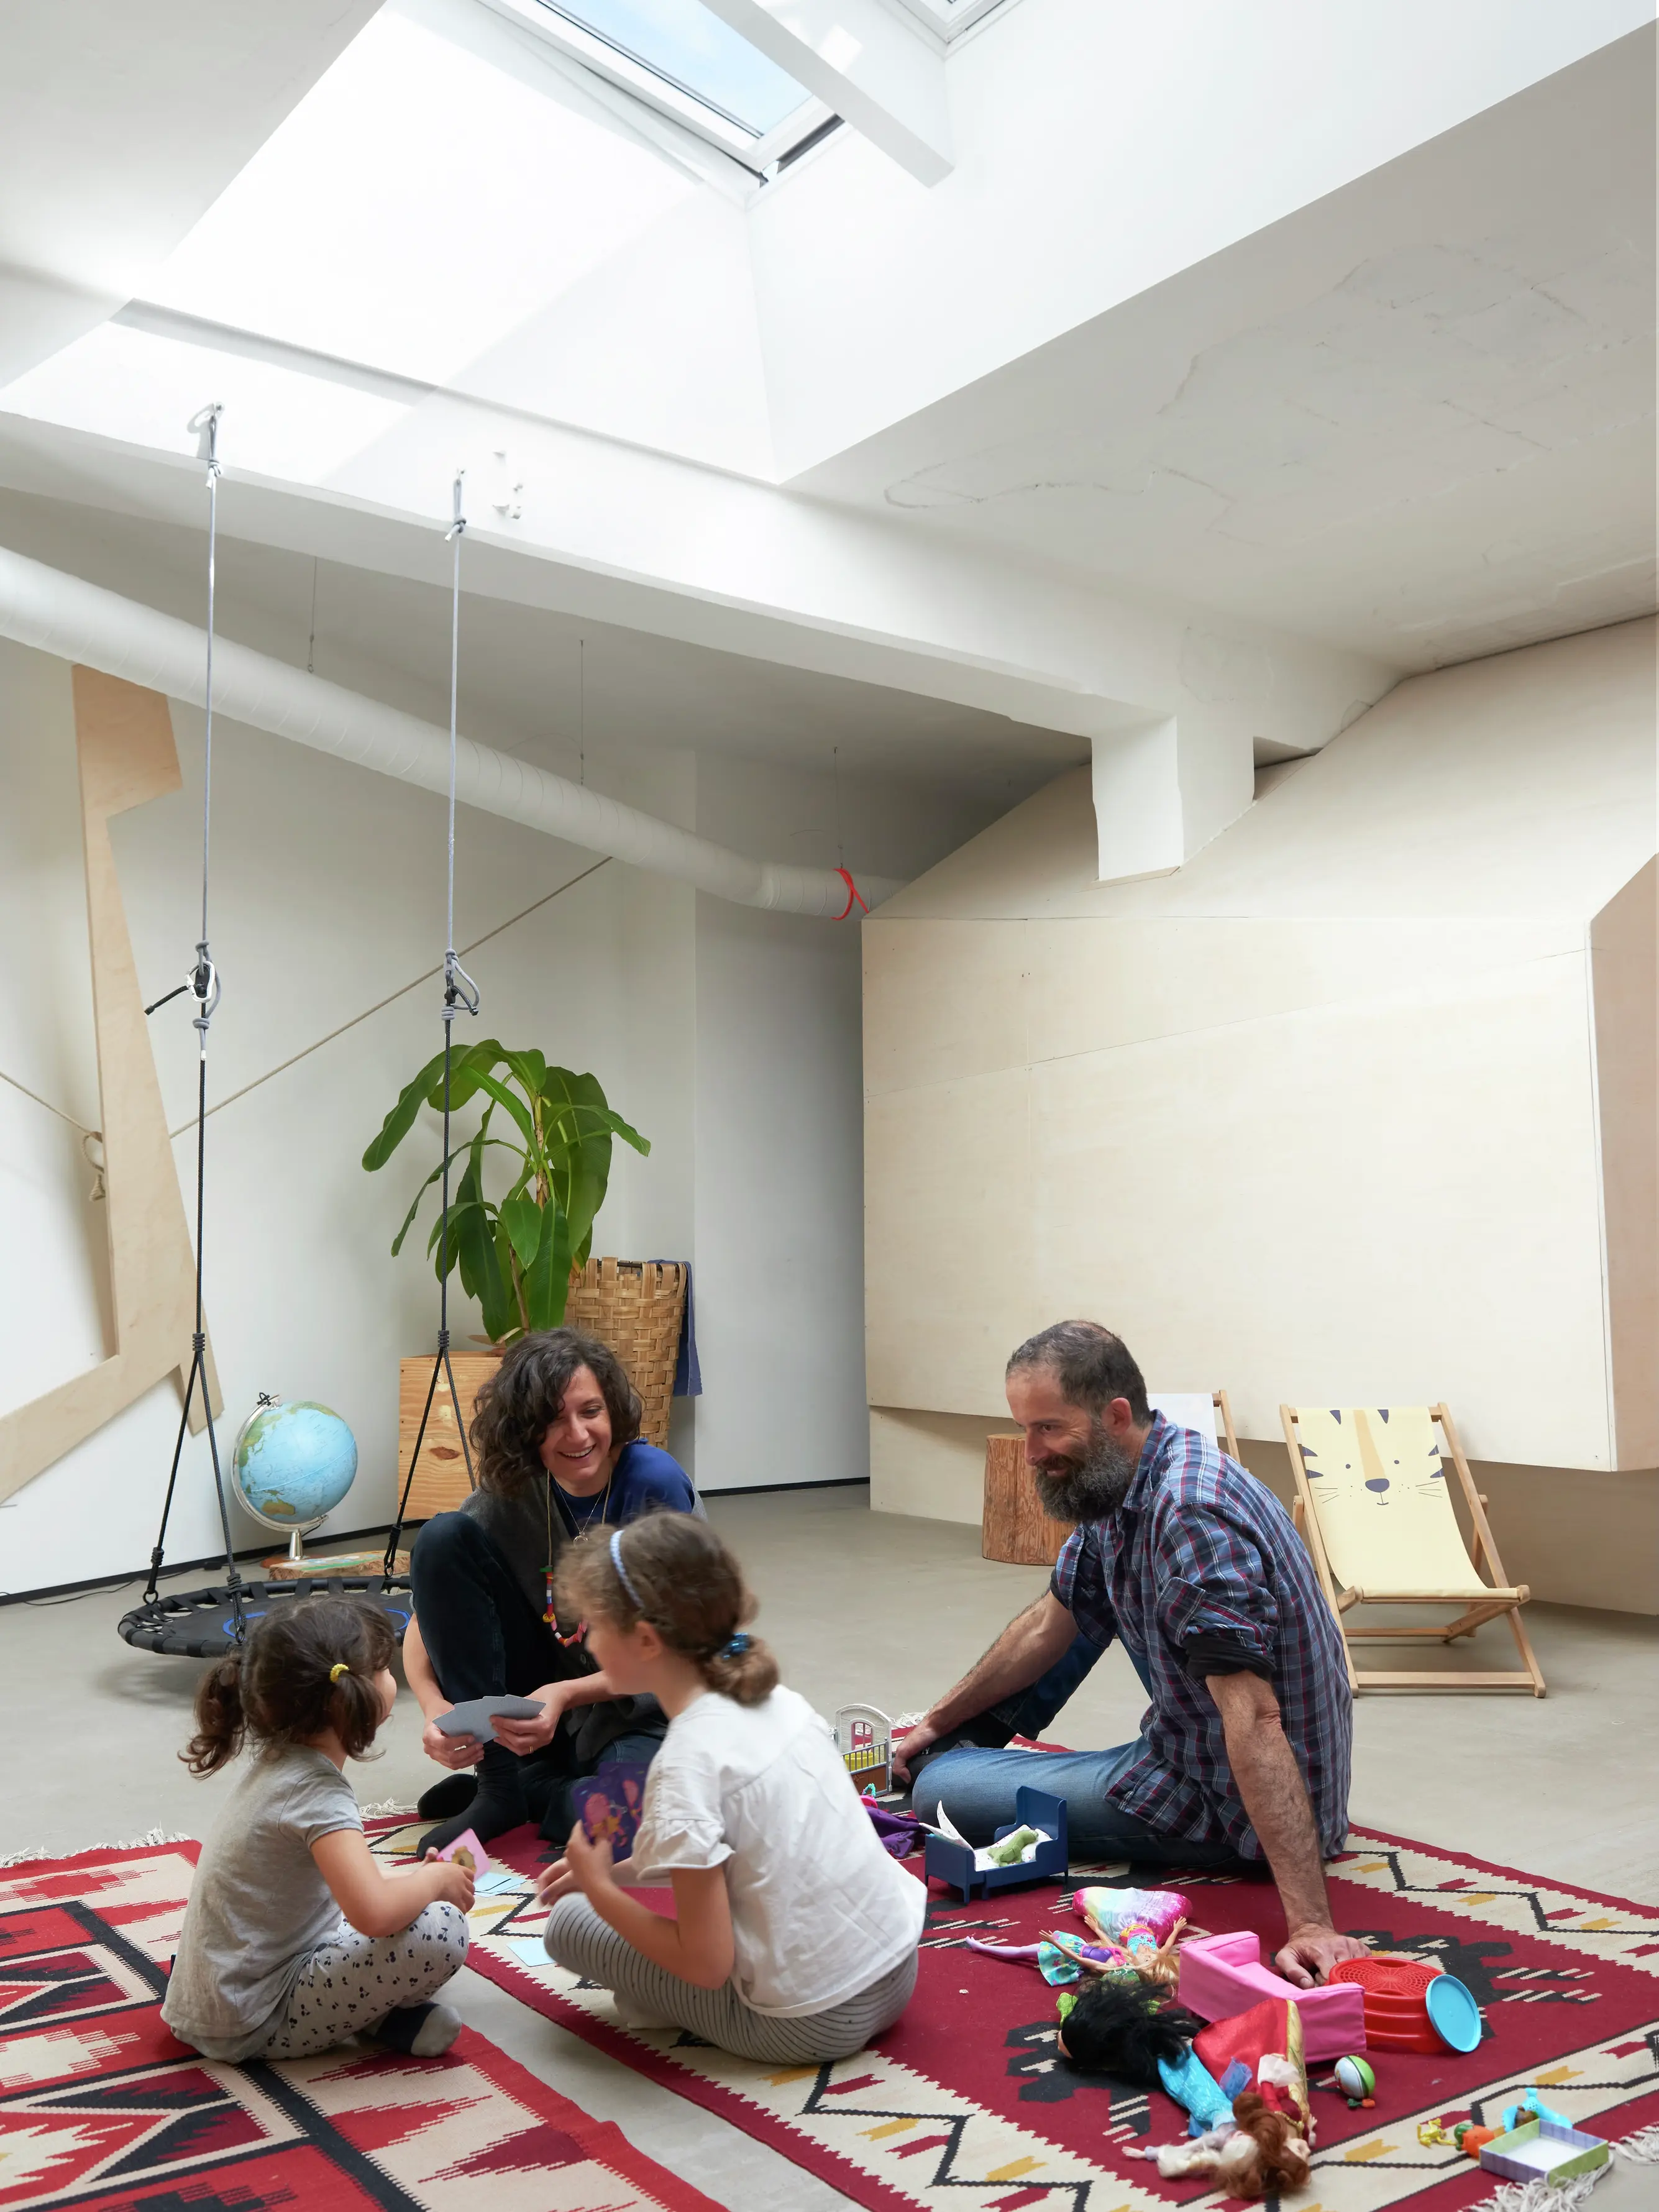 Famiglia che gioca in un soggiorno illuminato da una finestra per tetti VELUX, con giocattoli e un'altalena.